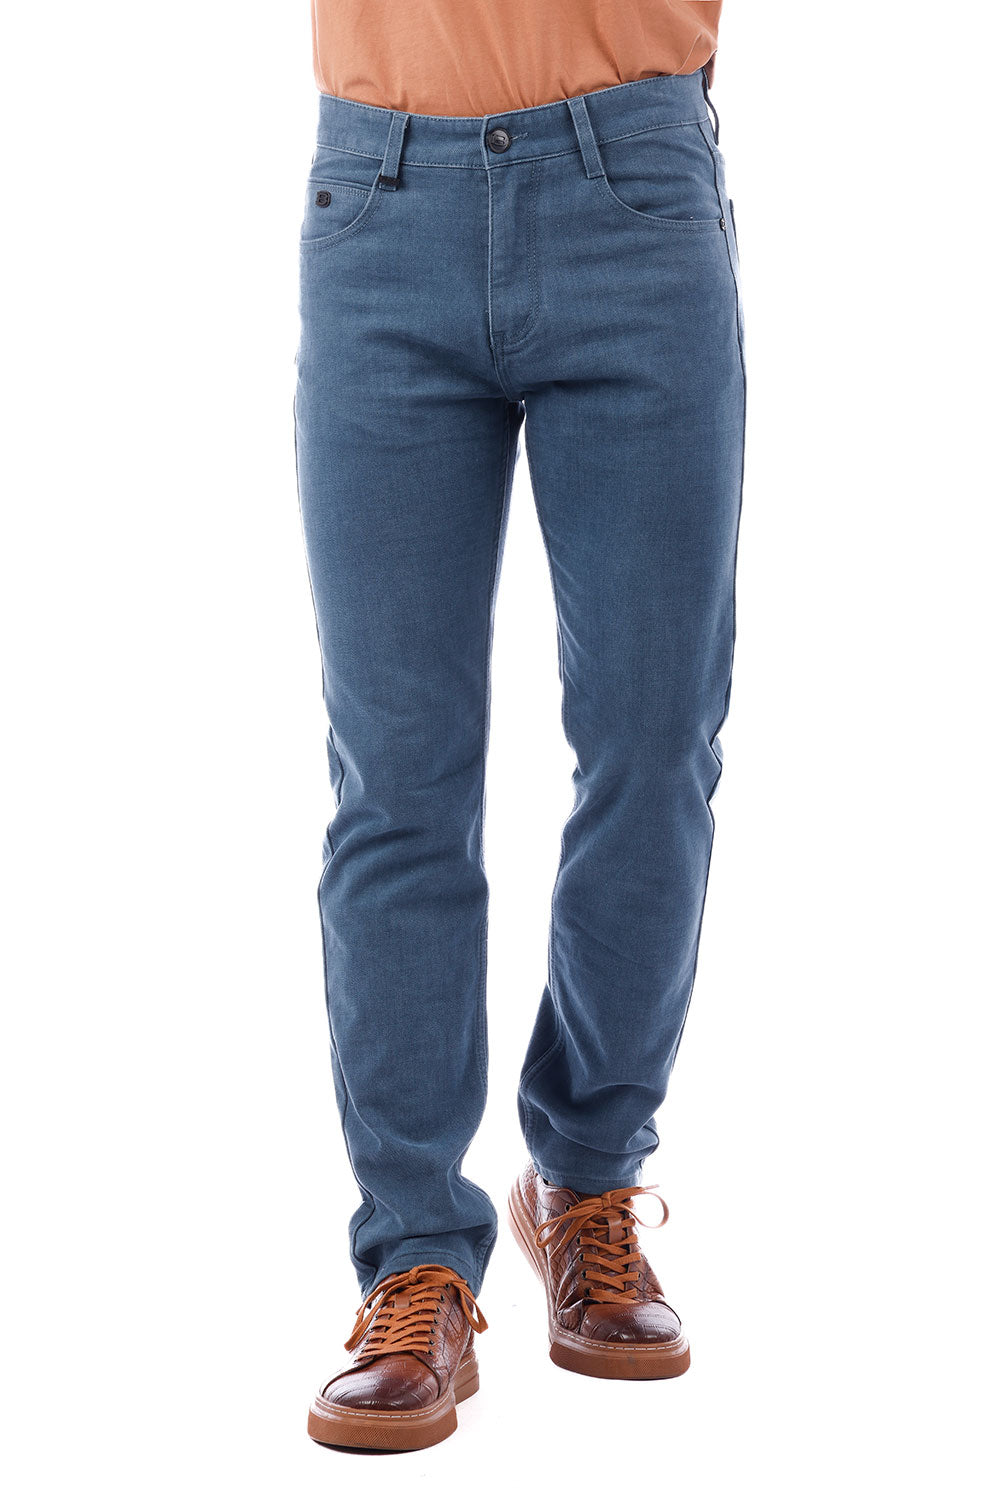 Barabas Men's Solid Color Premium Stretch Denim Jeans 3SN100 Teal